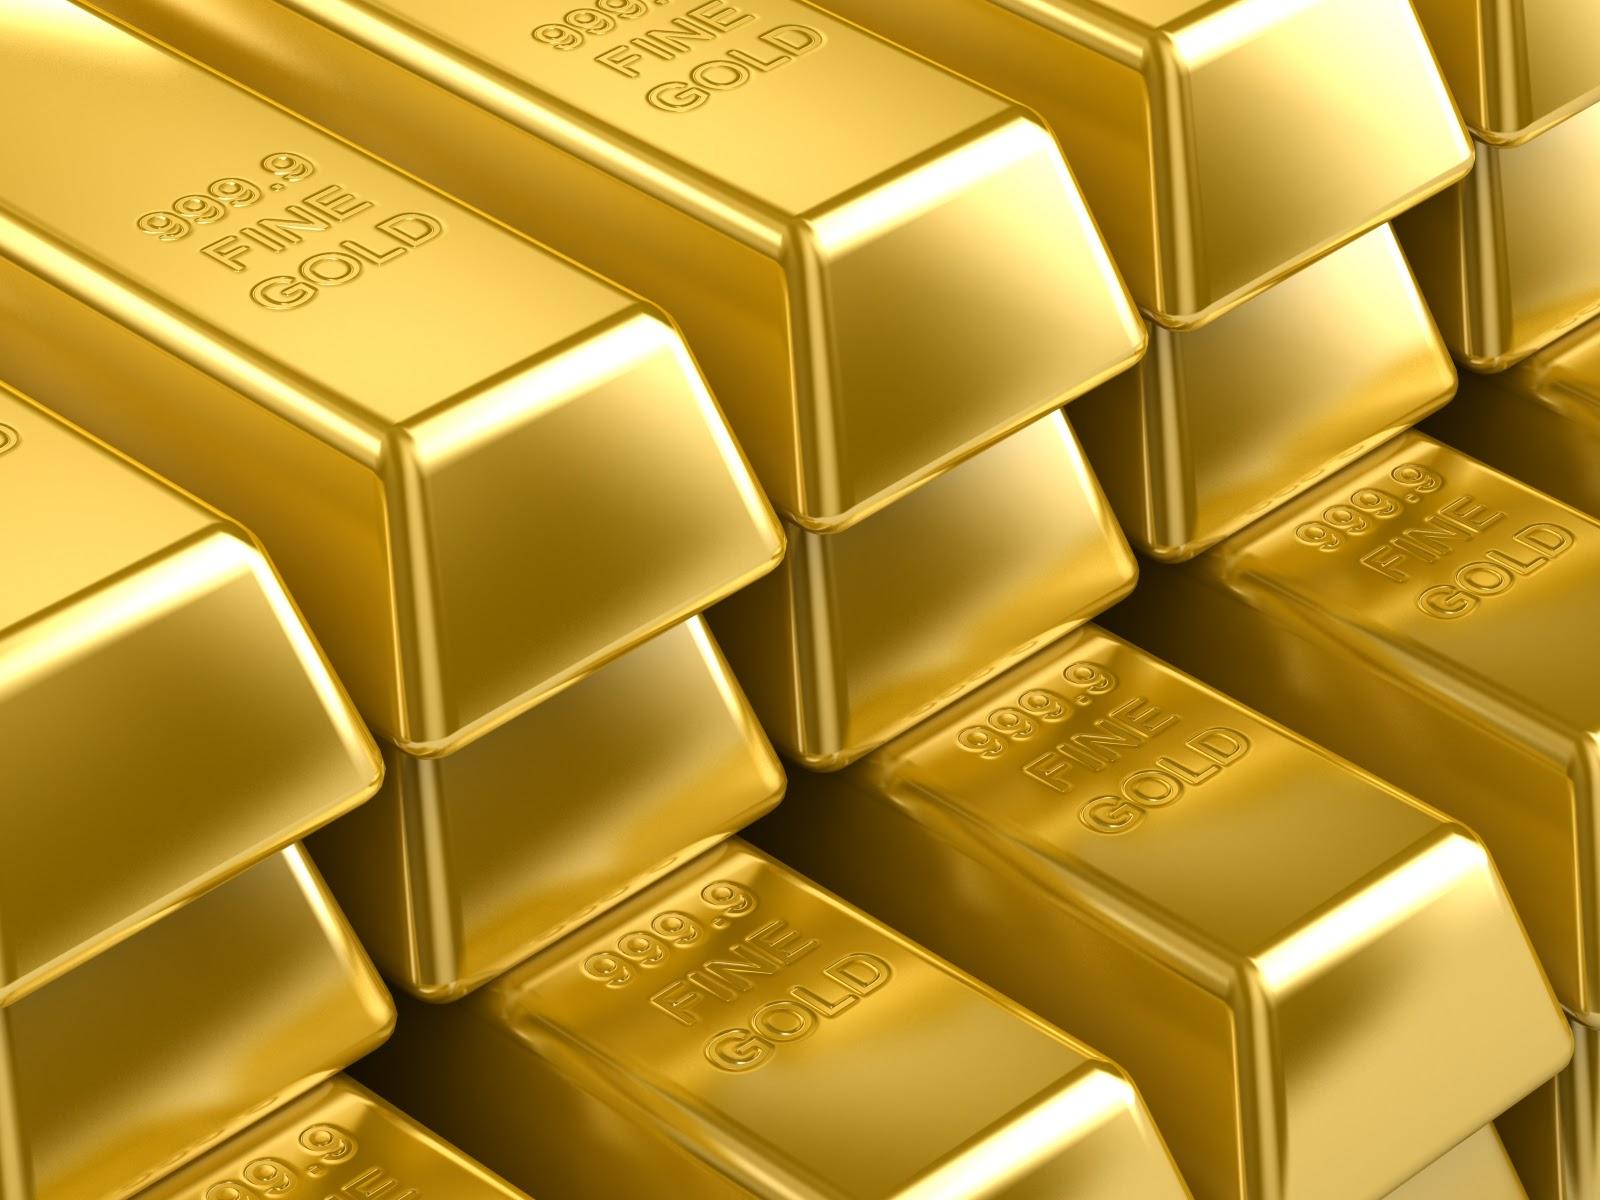 توقعات بارتفاع أسعار الذهب إلى 1500 دولار للأوقية